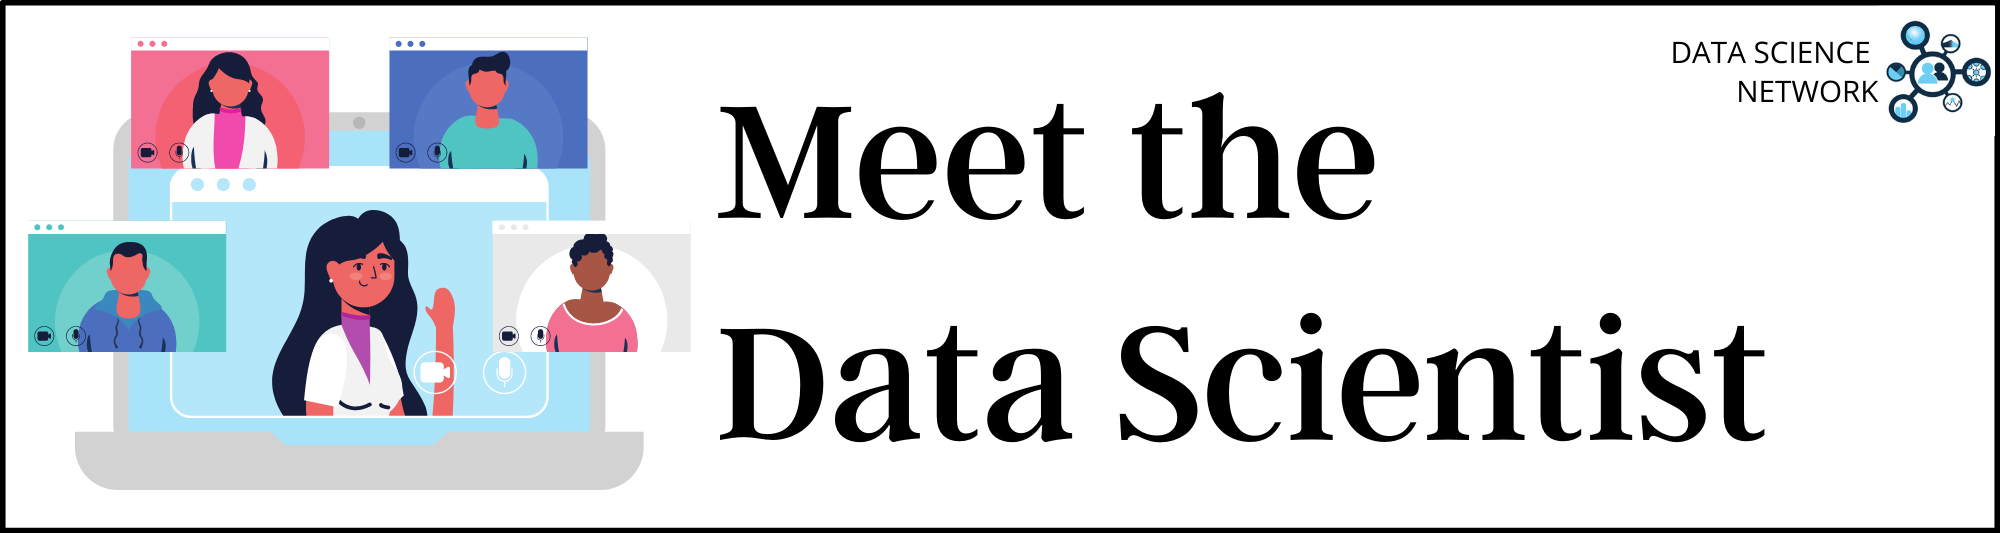 Meet the Data Scientist